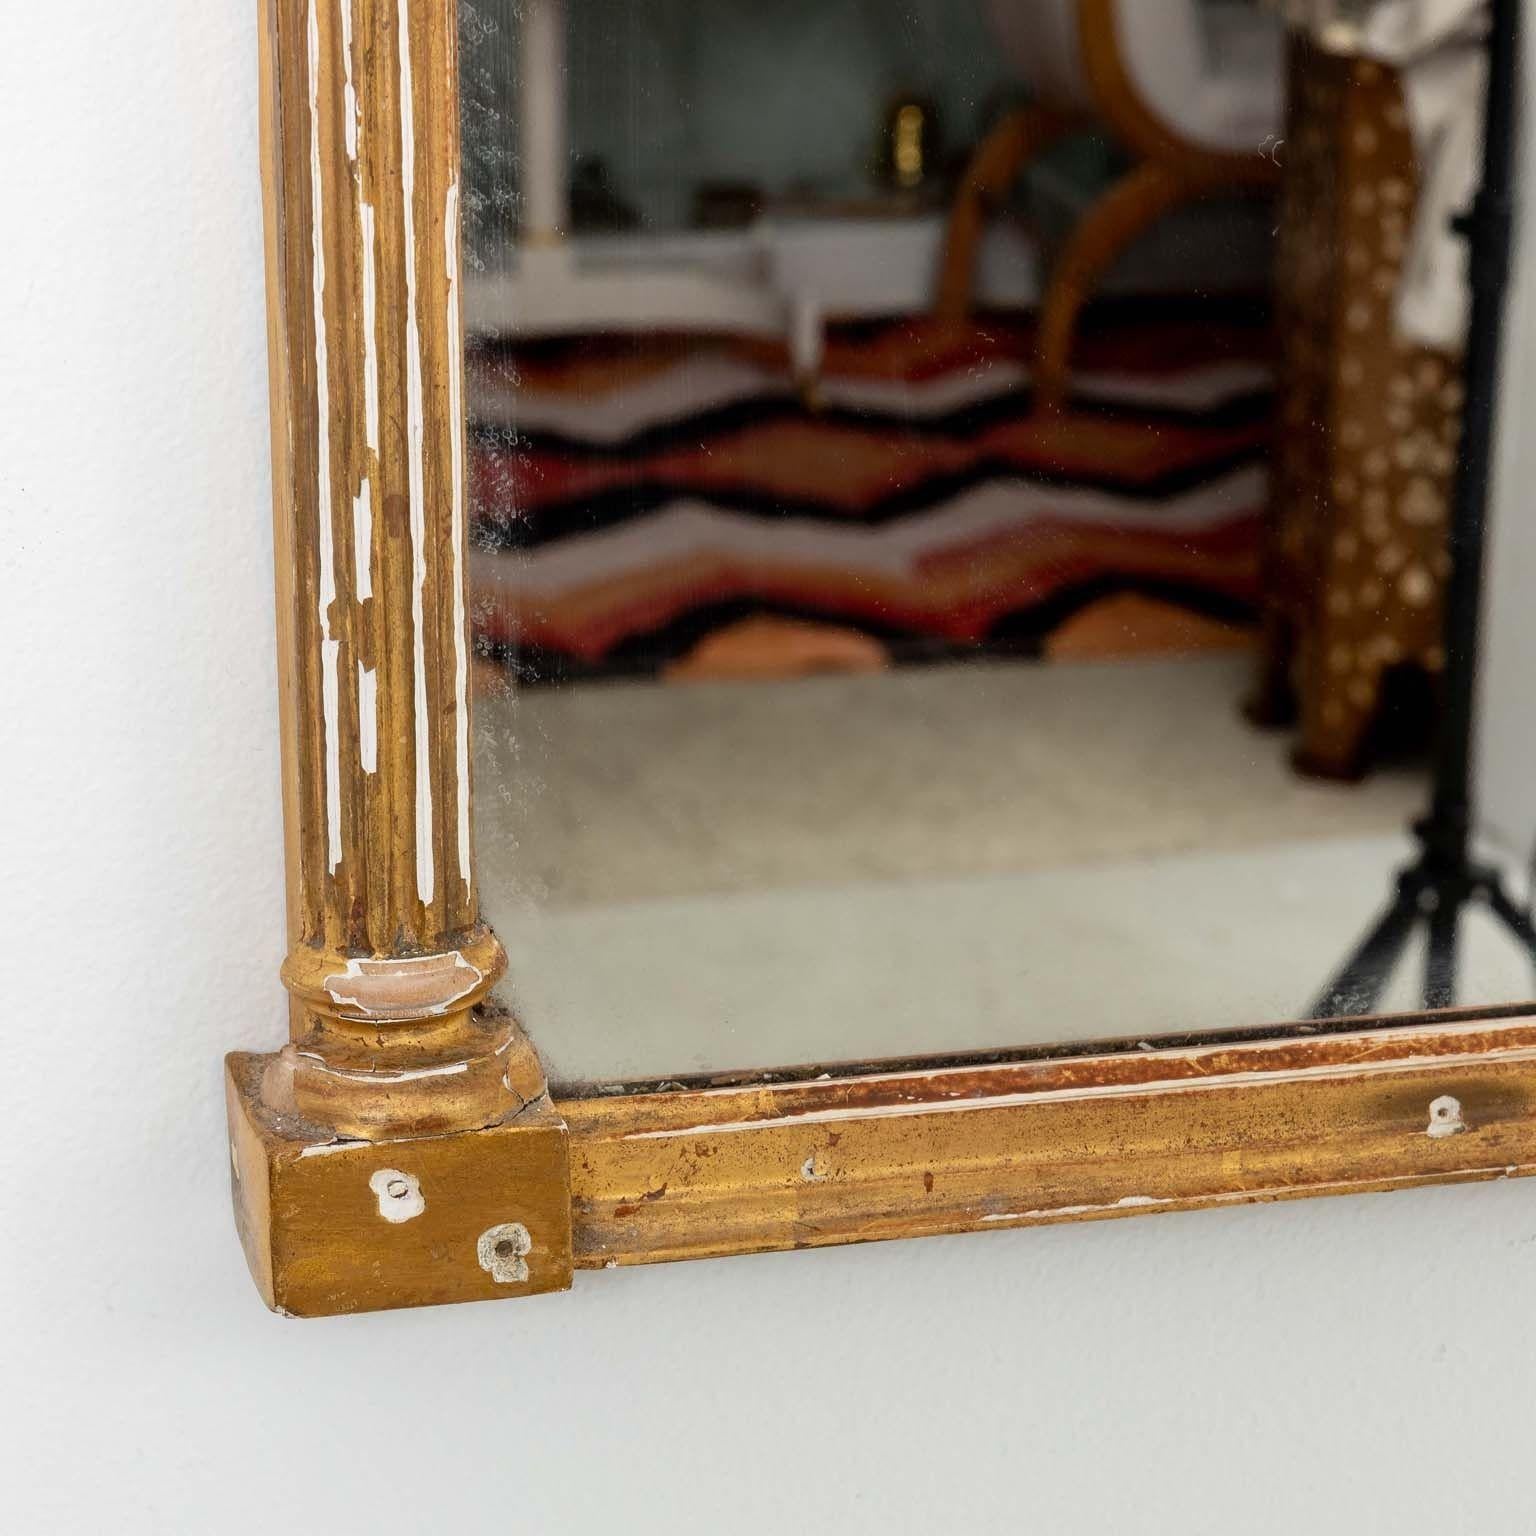 Ein Spiegel im Federal-Stil des frühen 20. Jahrhunderts, ein königliches Zeugnis zeitlosen Designs, verziert mit einer Ananas als Symbol für Gastfreundschaft und Wärme. Der Giebel besticht durch eine Eglomise-Platte, die sich in ihrer Form an den